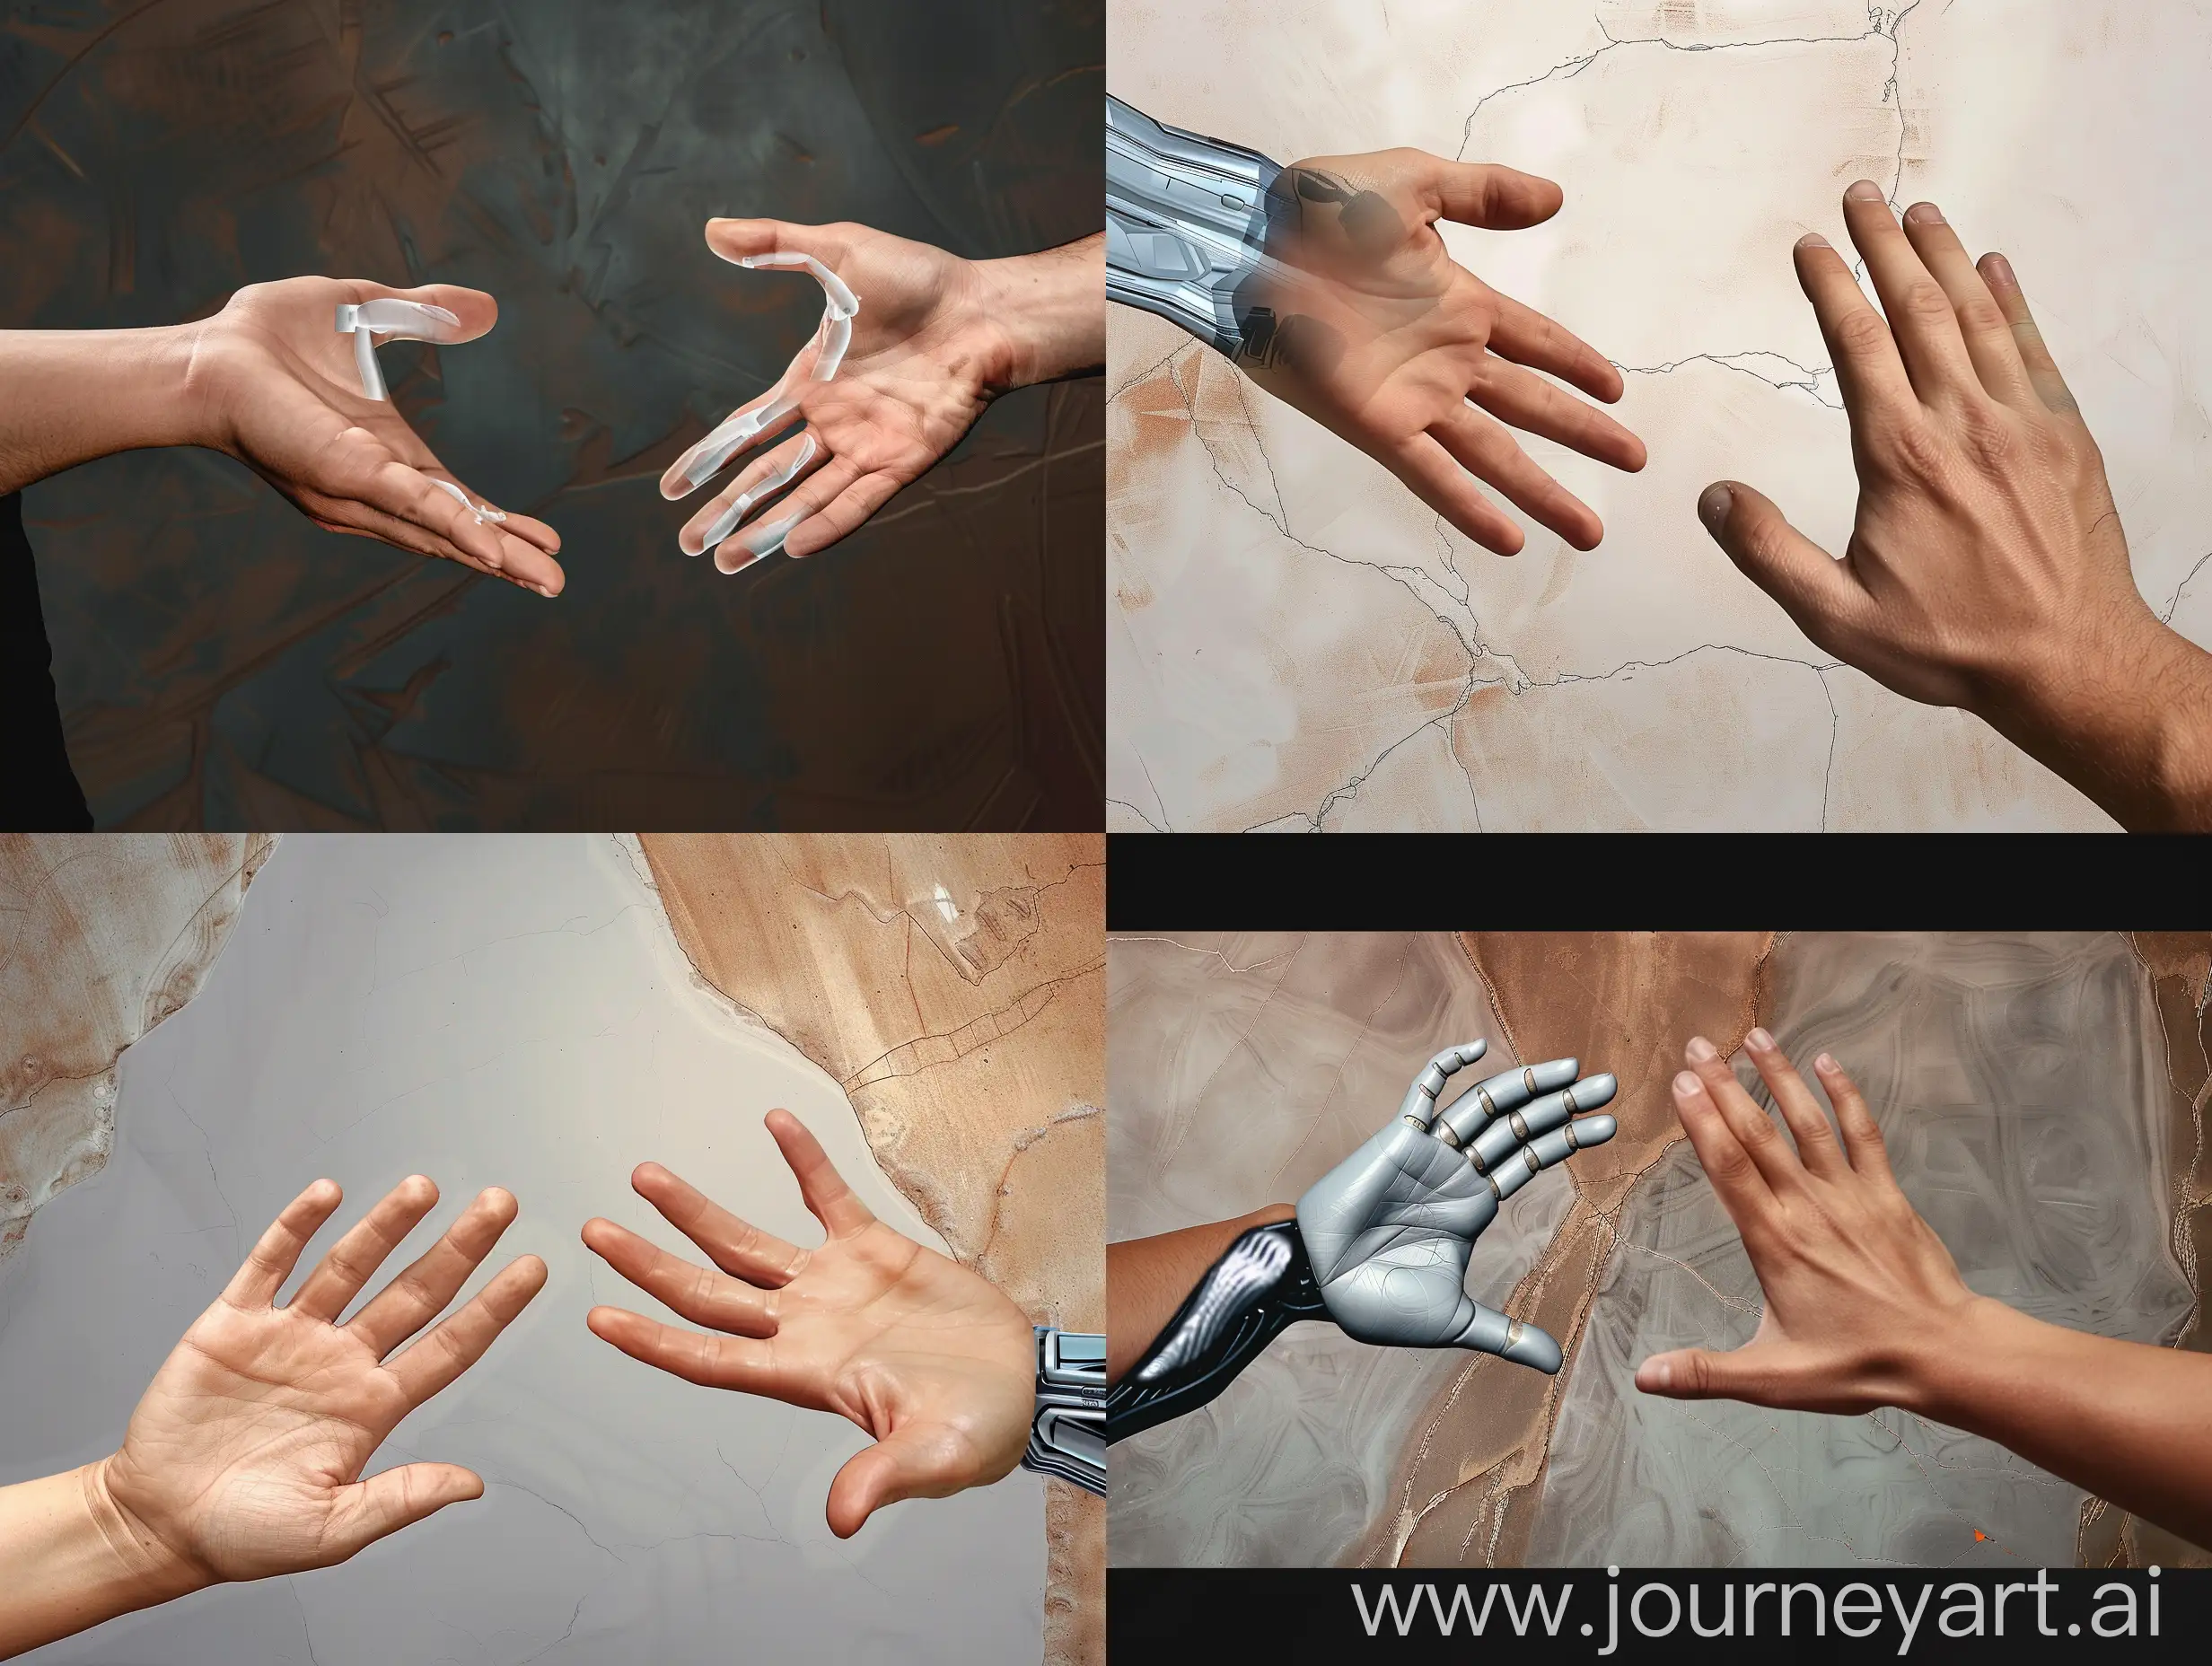 Digital-Art-Person-Digitally-Manipulating-Hands